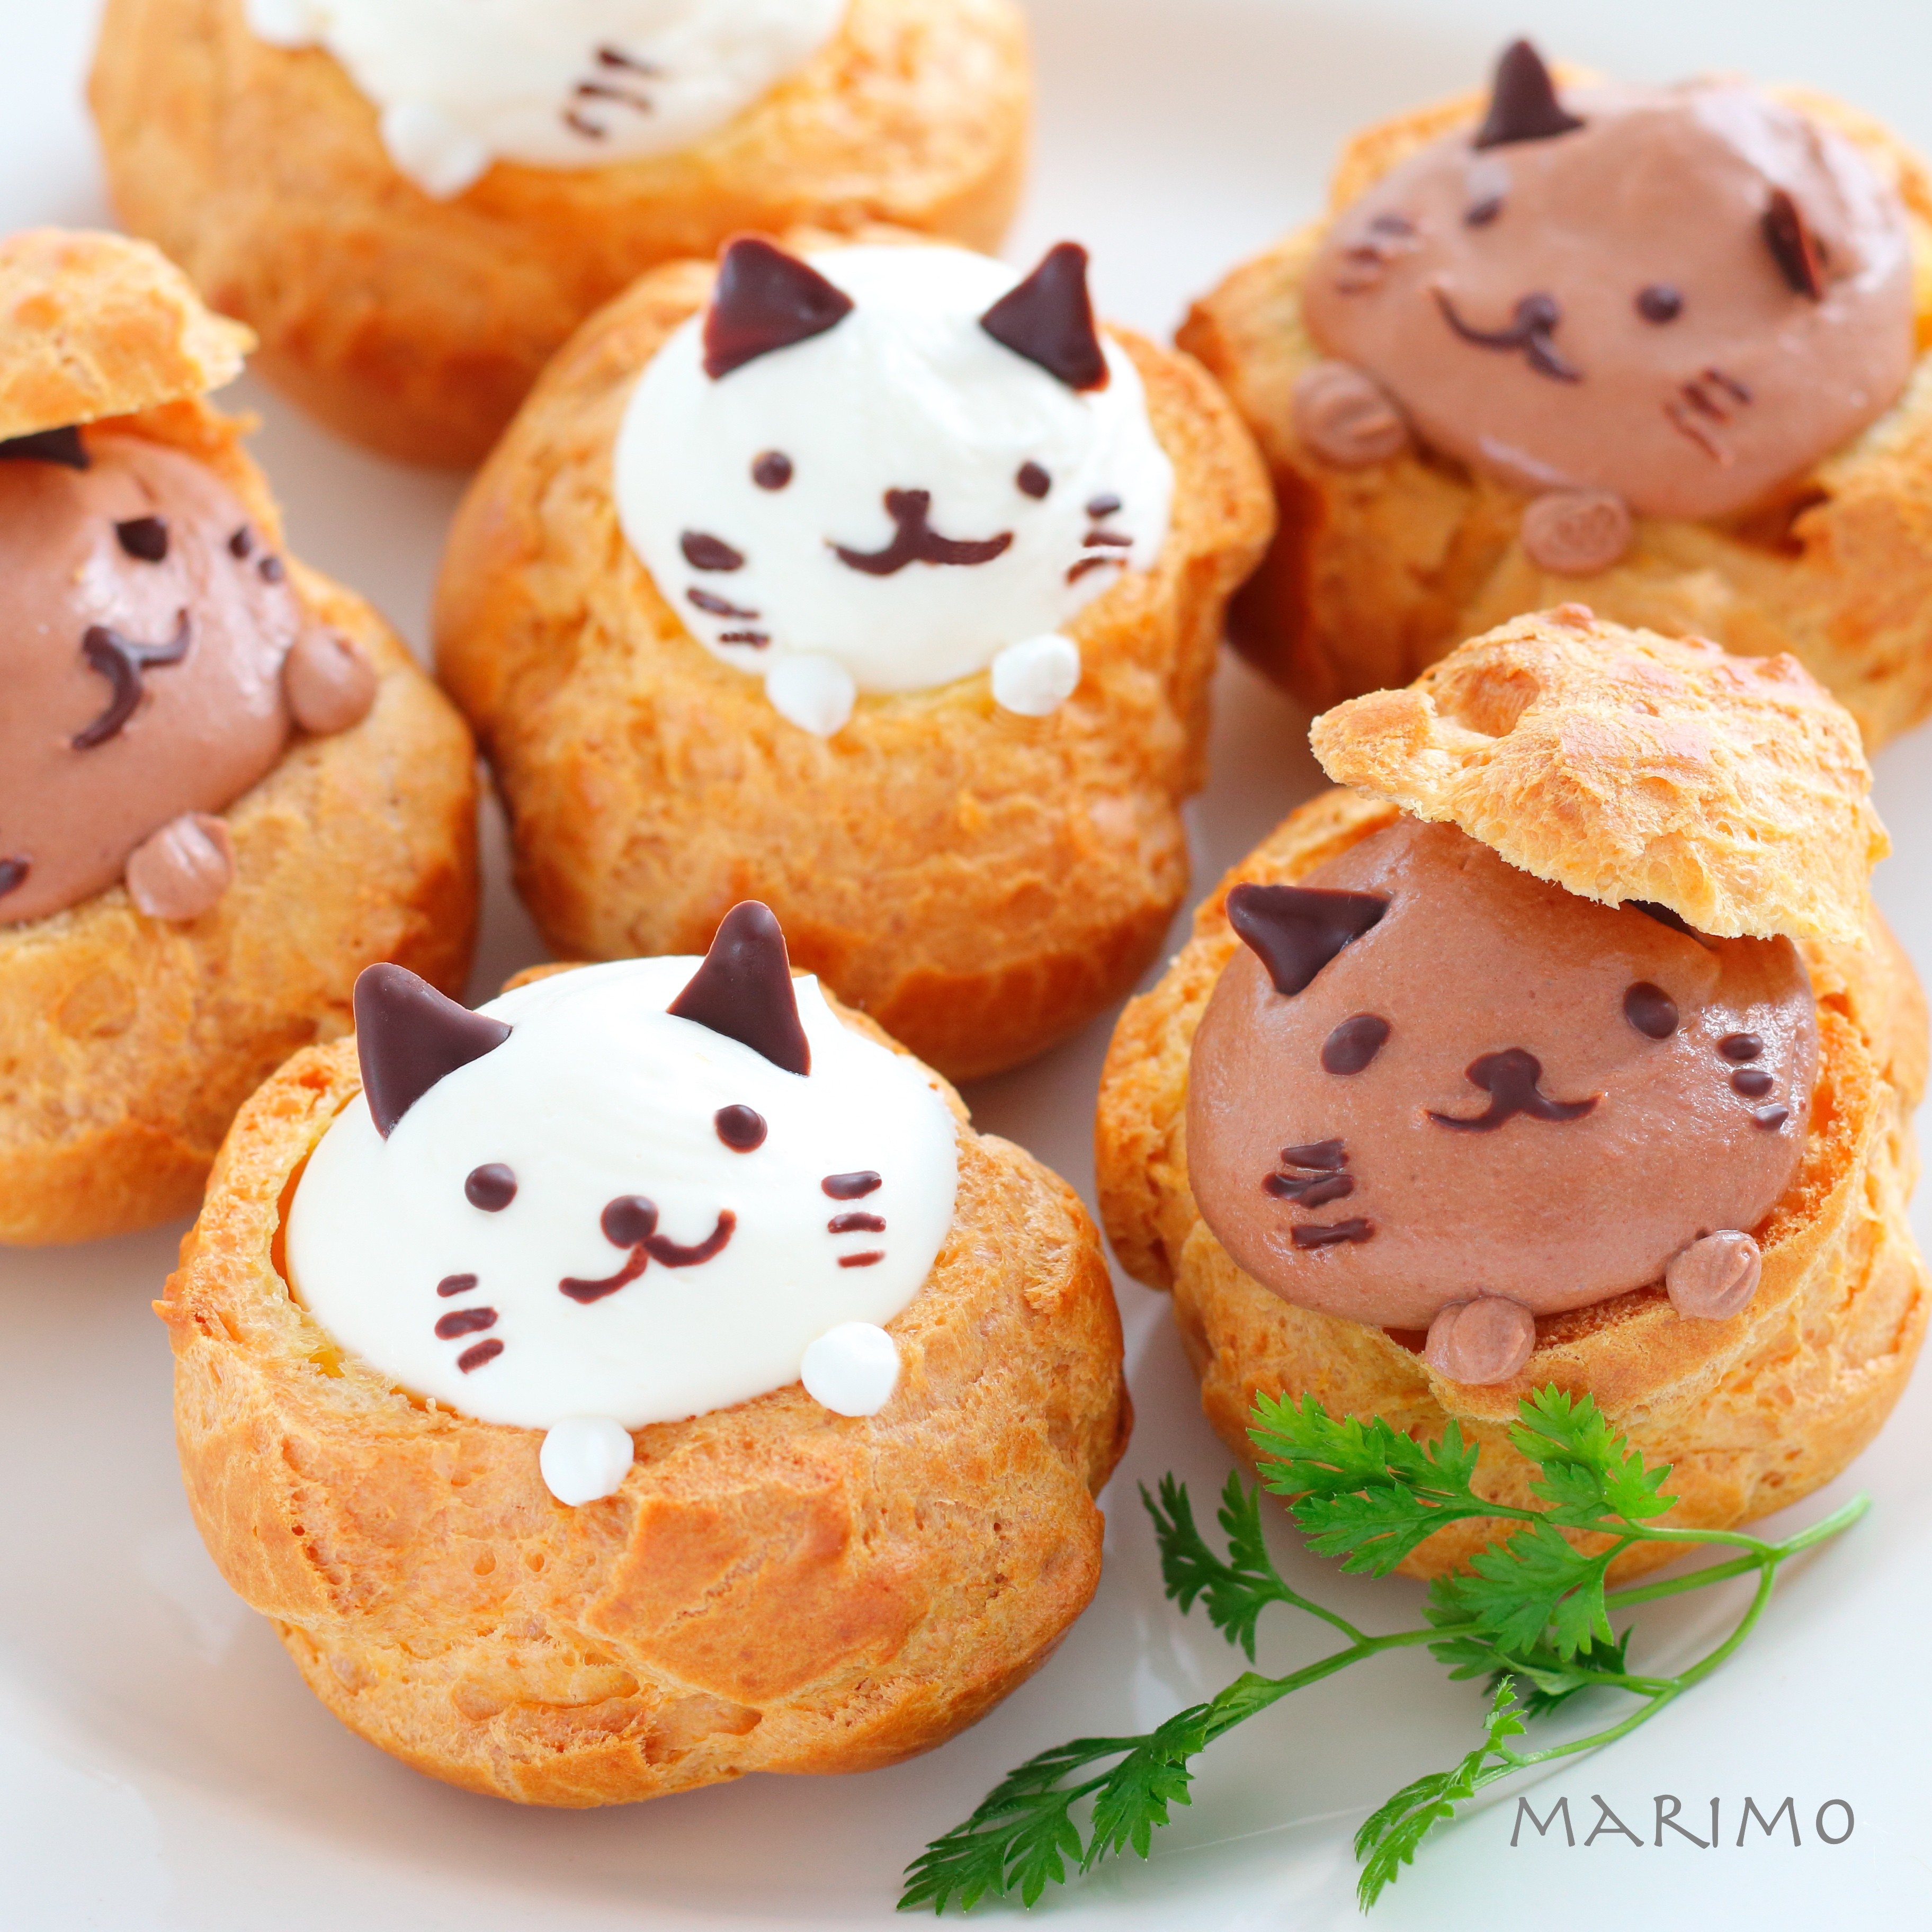 お菓子レシピ 白猫と黒猫のシュークリーム Marimo Cafe 可愛くて美味しいお菓子レシピ Powered By ライブドアブログ